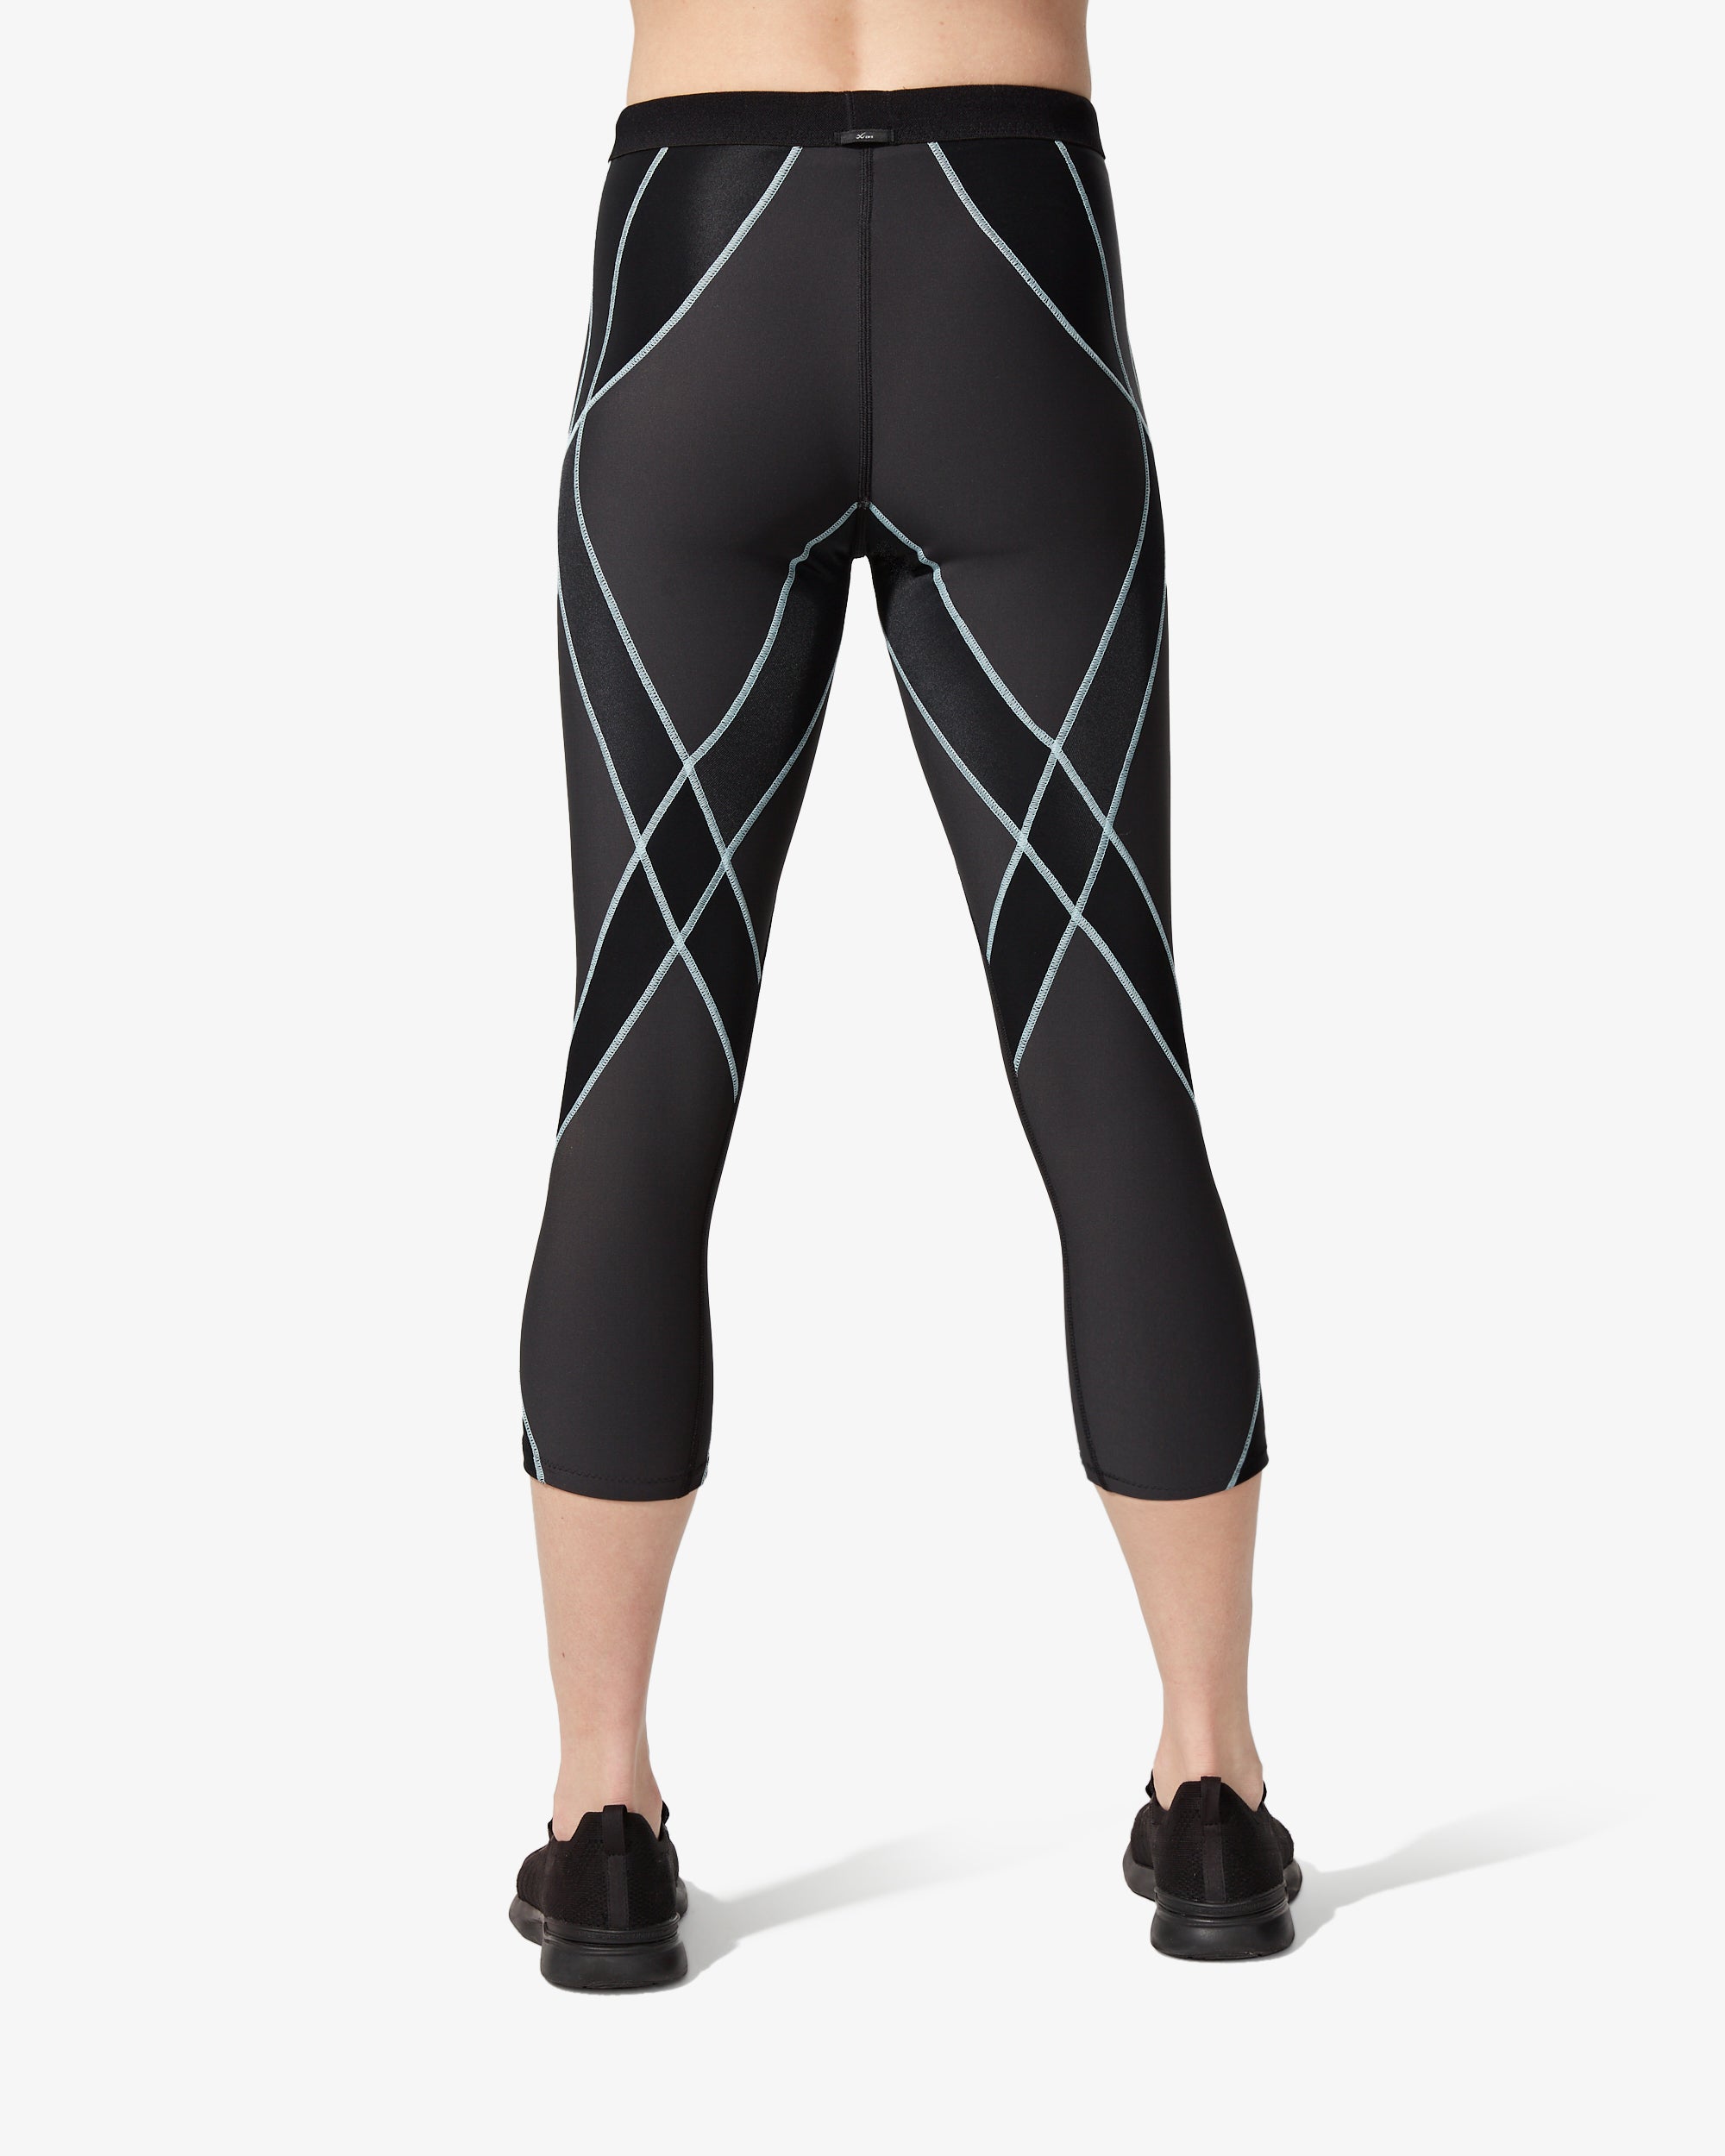 Design de leggings spandex ou nylon form fitting form design style para  isolado em branco bg blank.